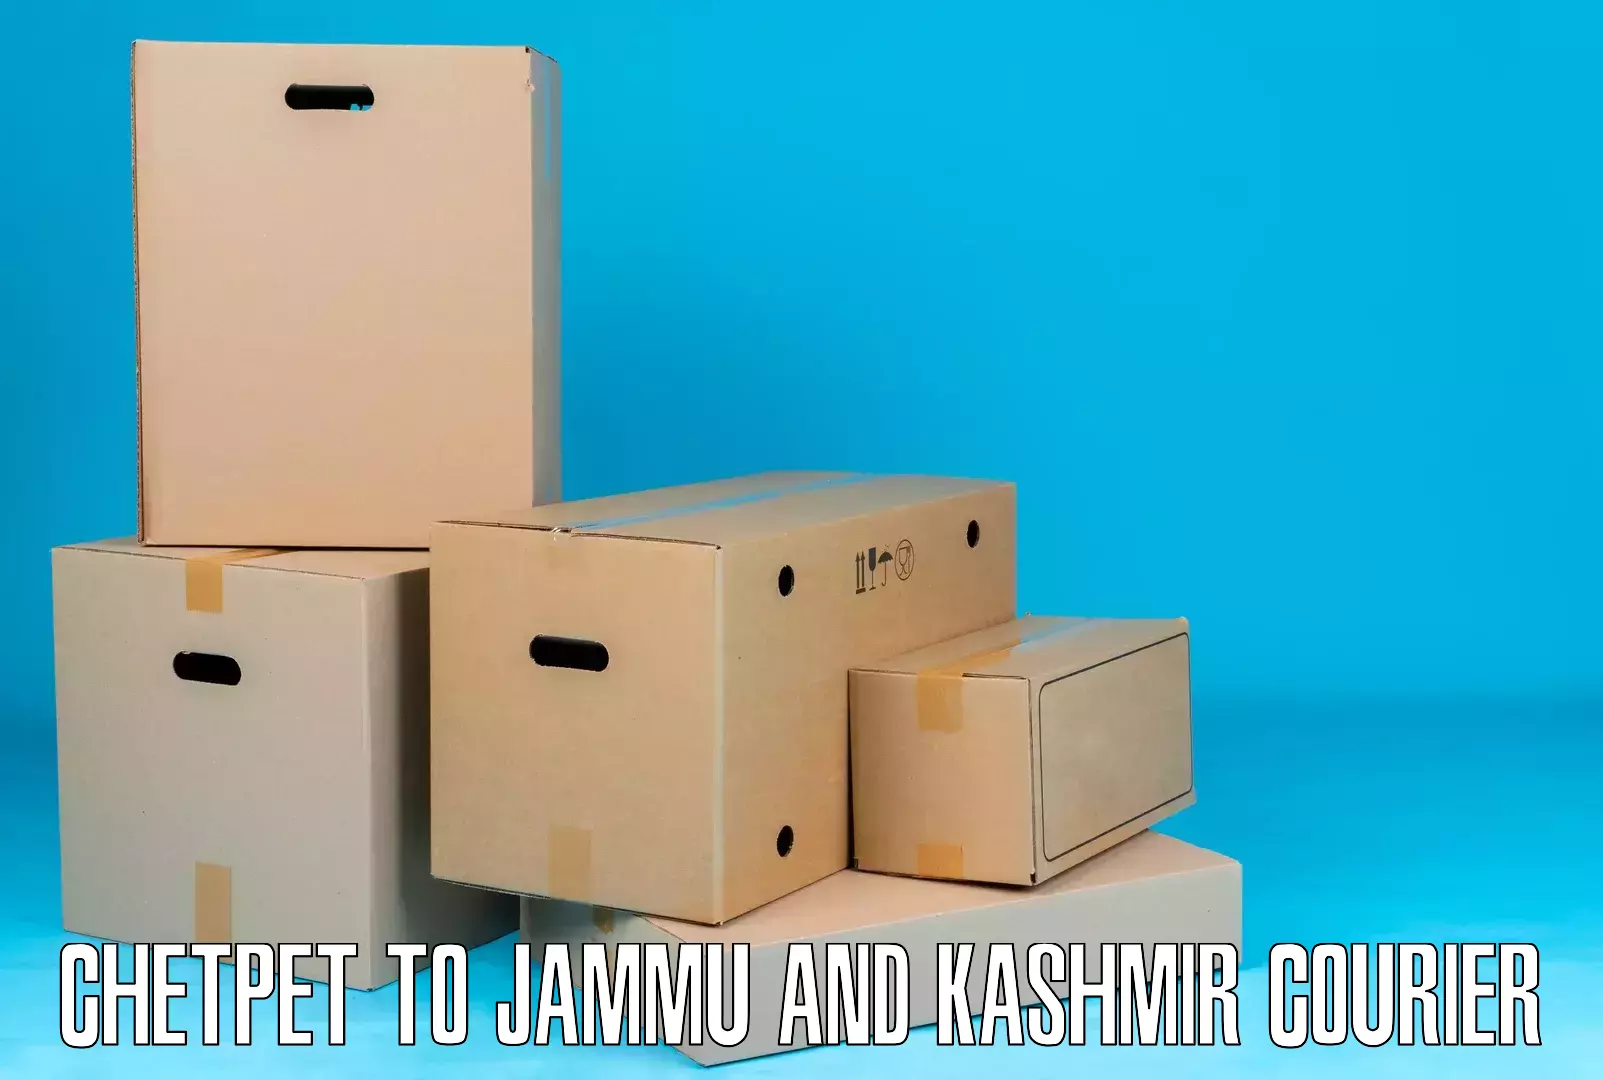 Business logistics support Chetpet to Srinagar Kashmir